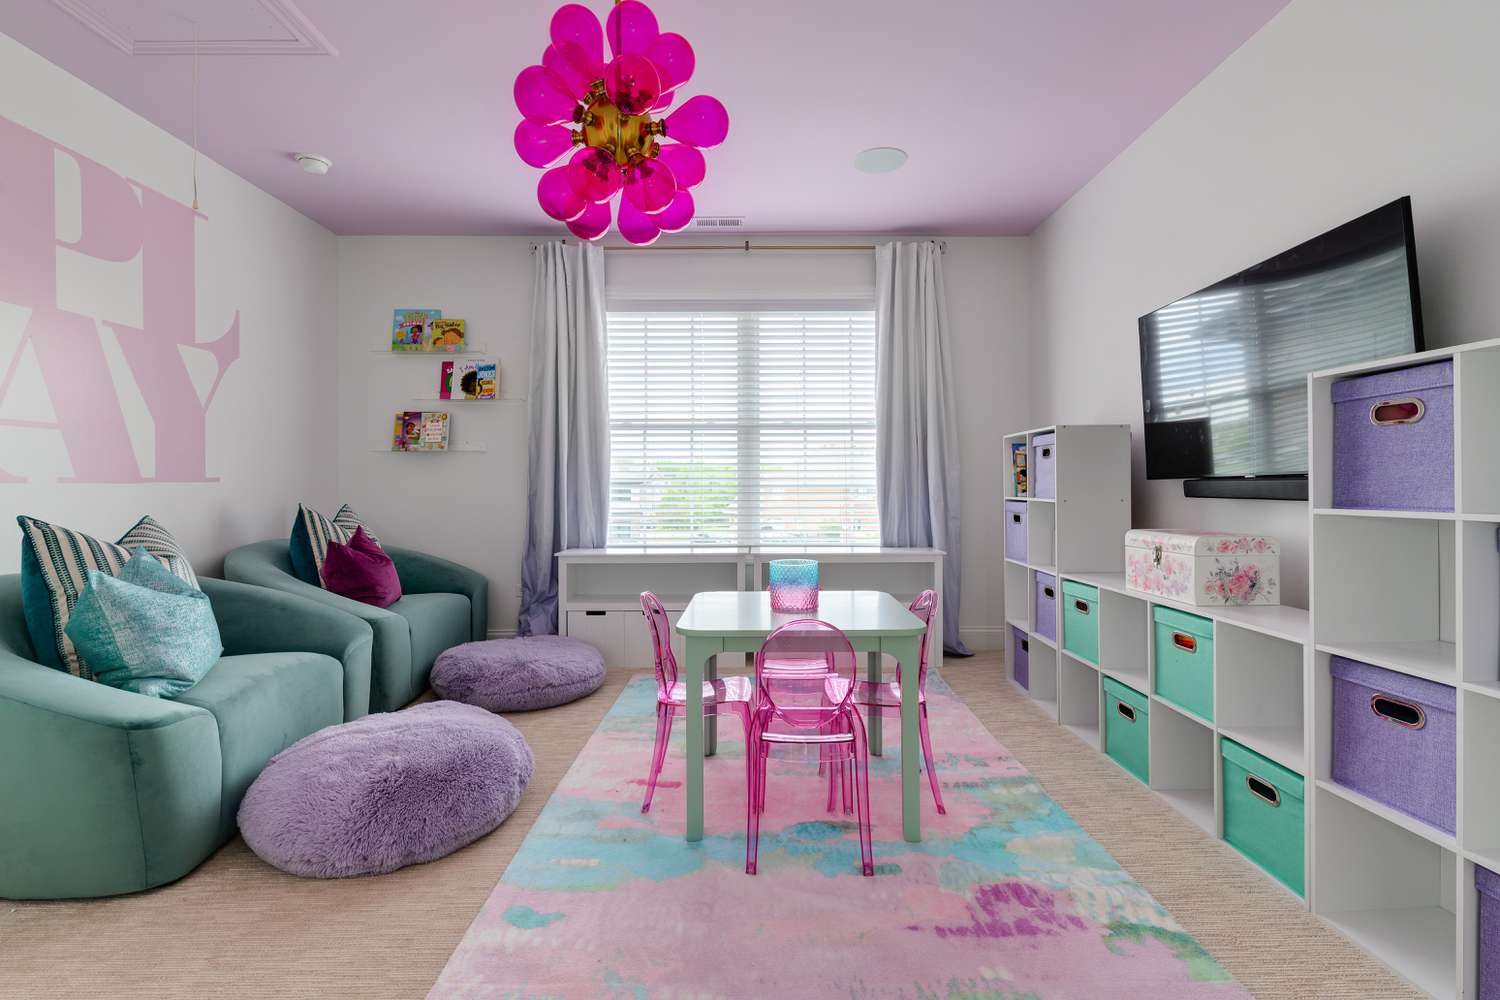 Une salle de jeux pour enfants à thème rose, violet et turquoise